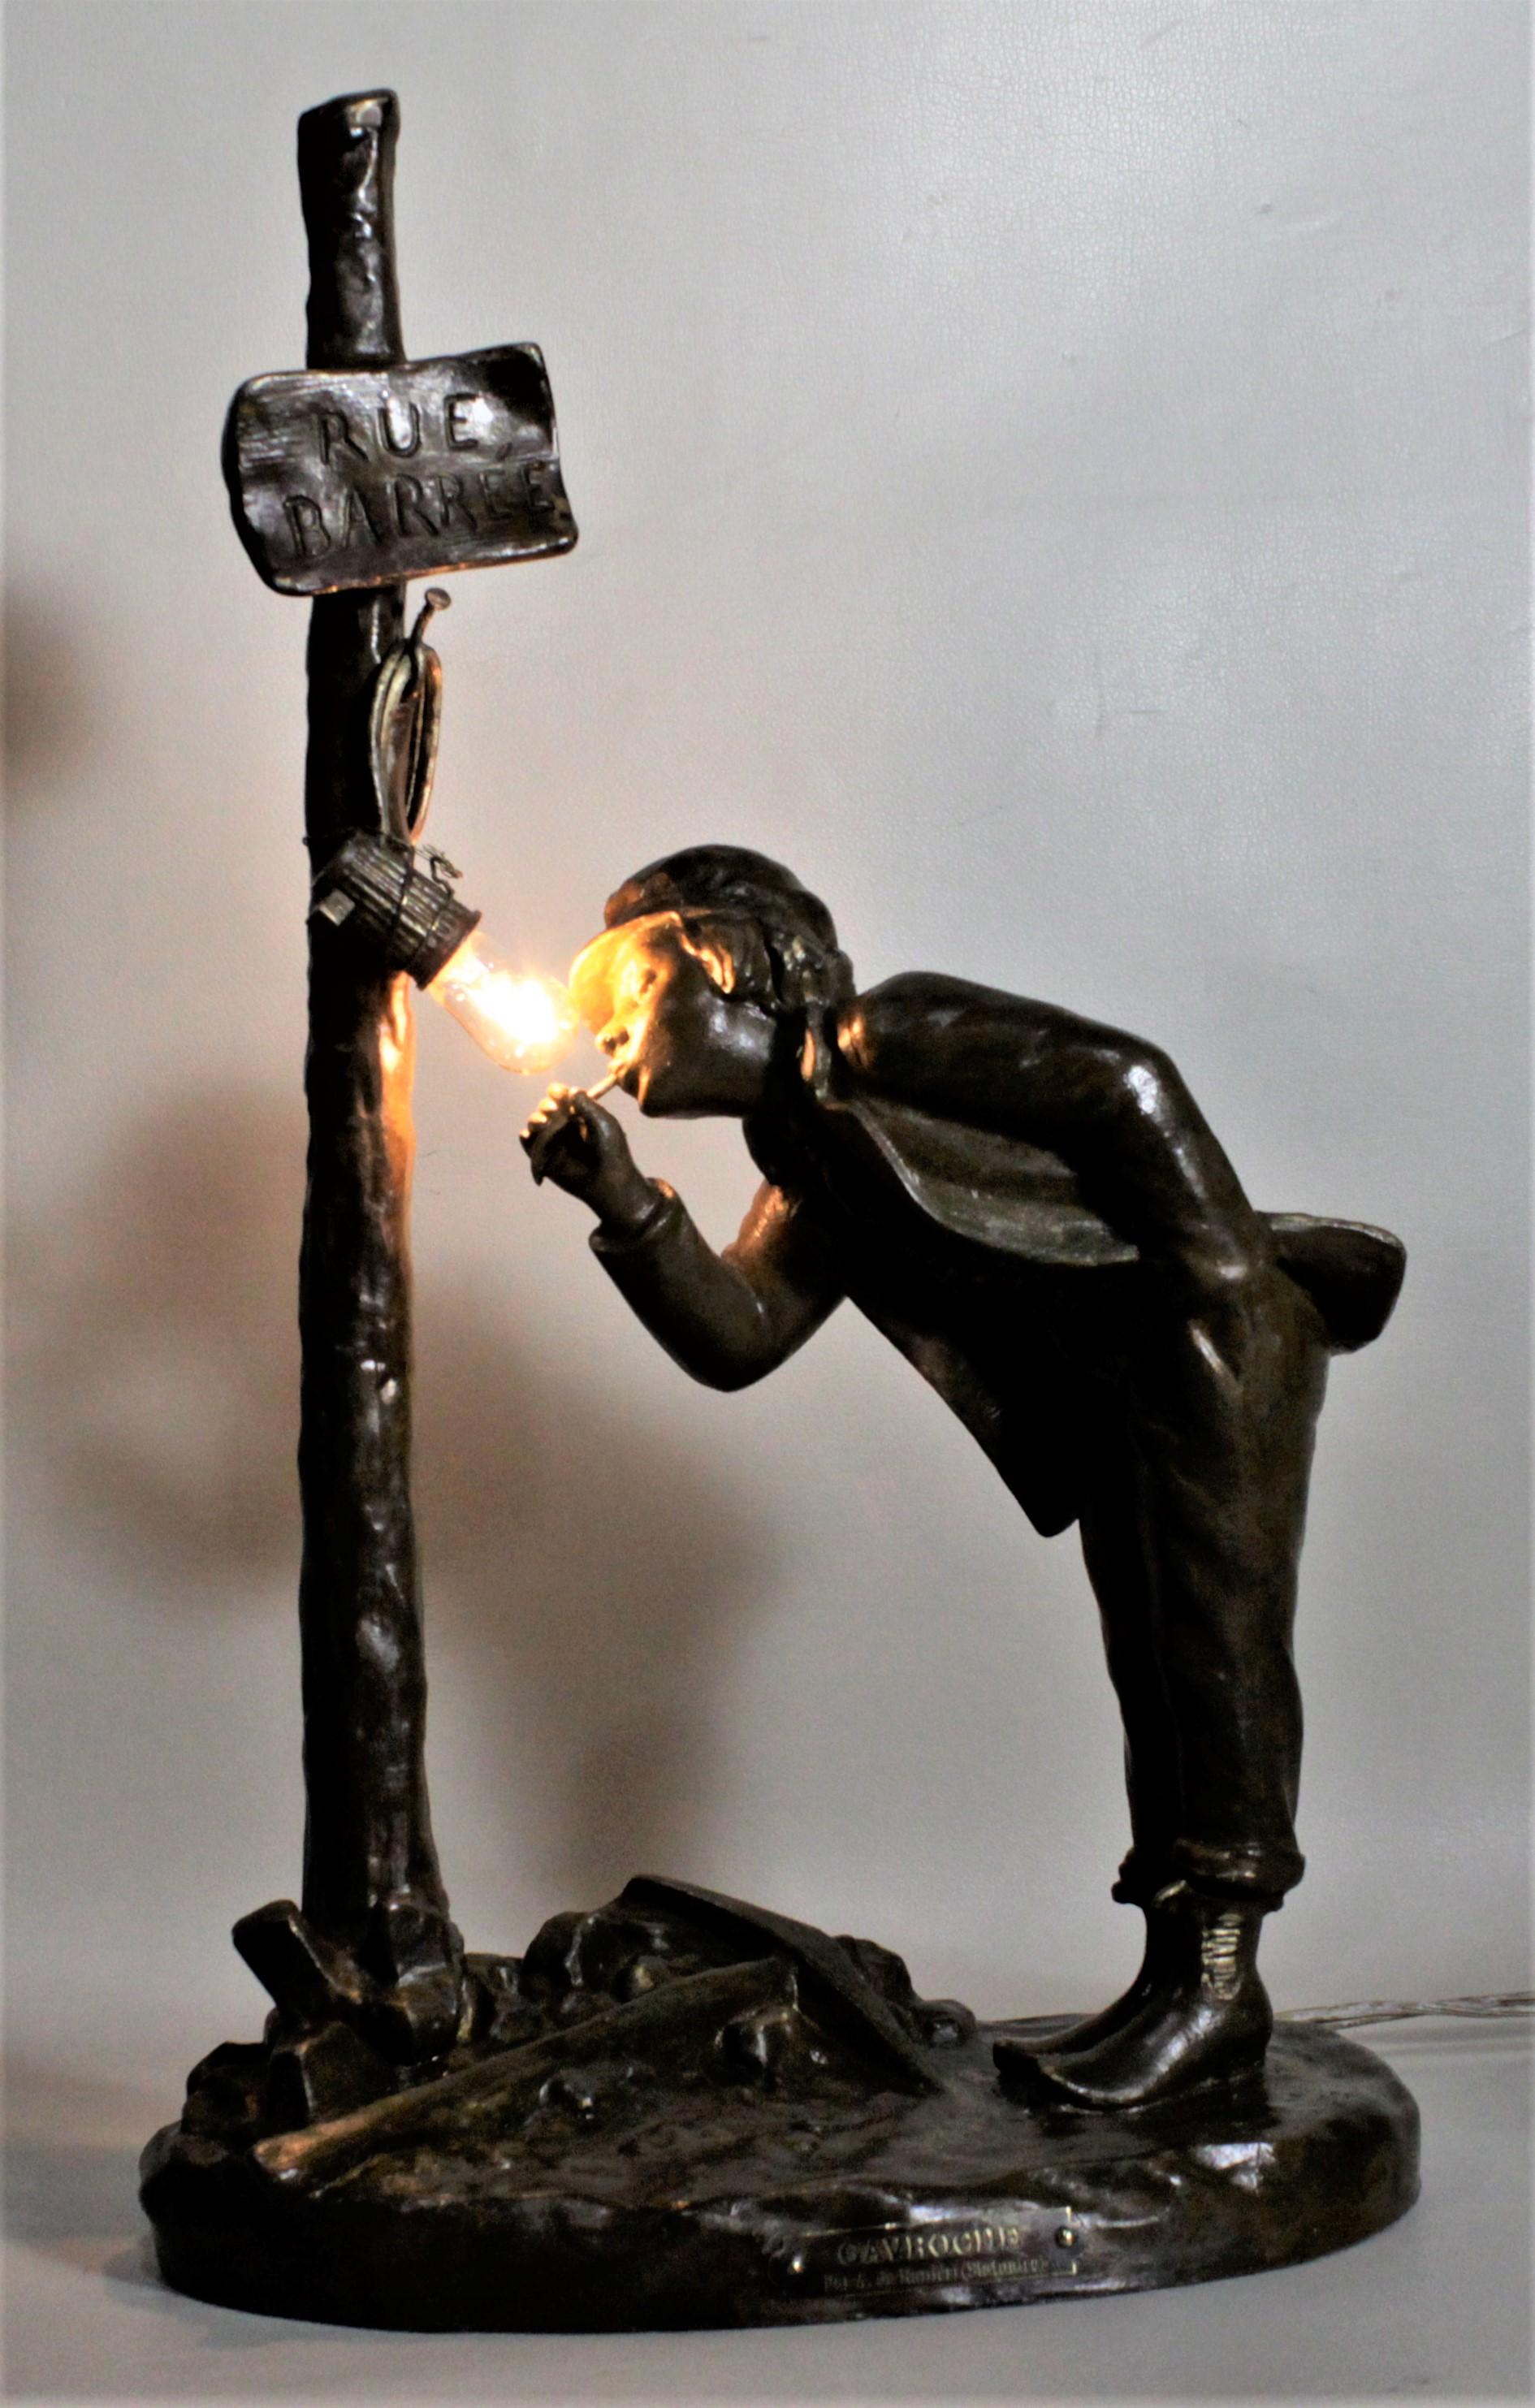 ranieri sculpture casting